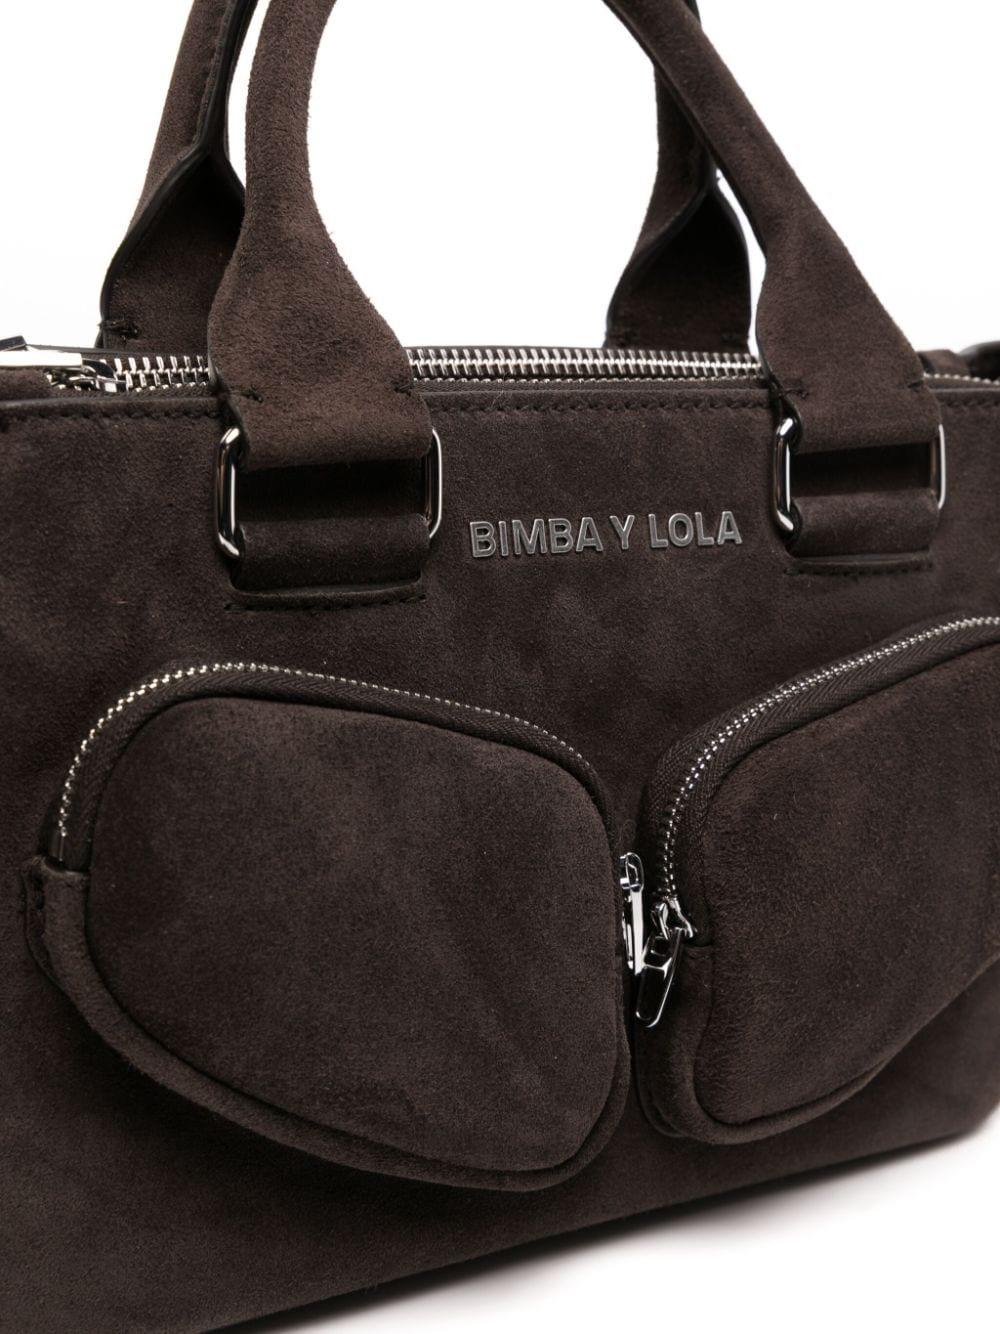 Bimba Y Lola Medium Pocket Suede Tote Bag in Black